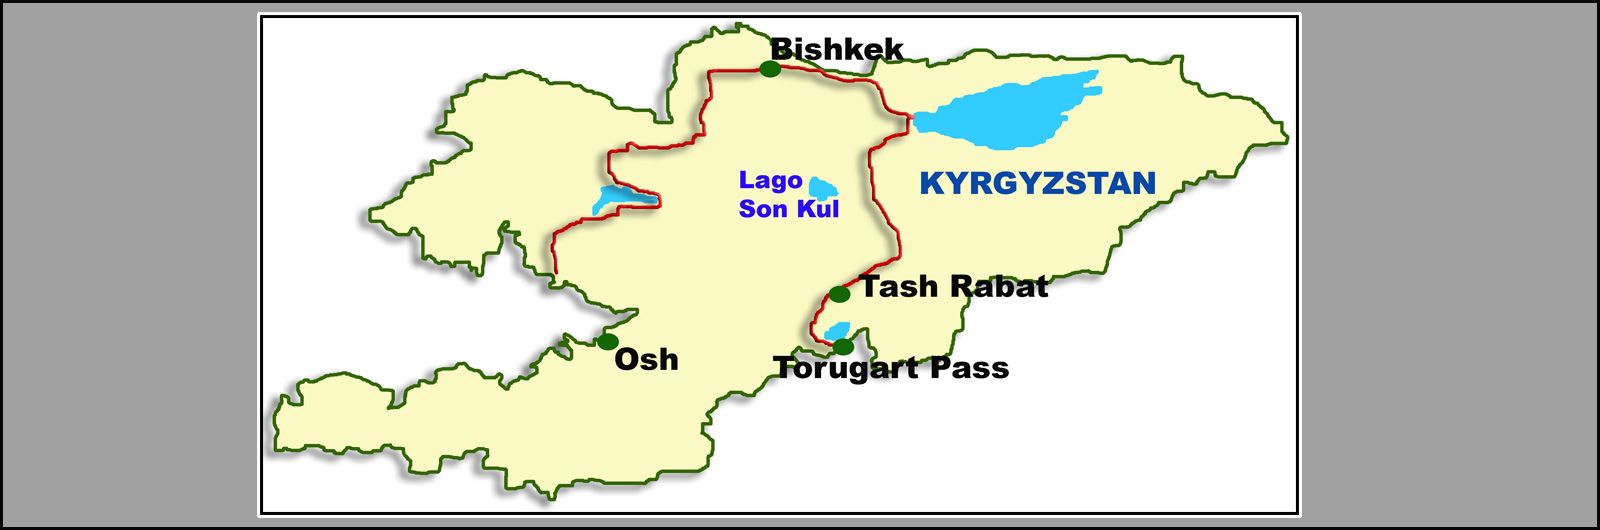 01 Ruta de la Seda: Ciudades y Lugares. Kirgyzstn